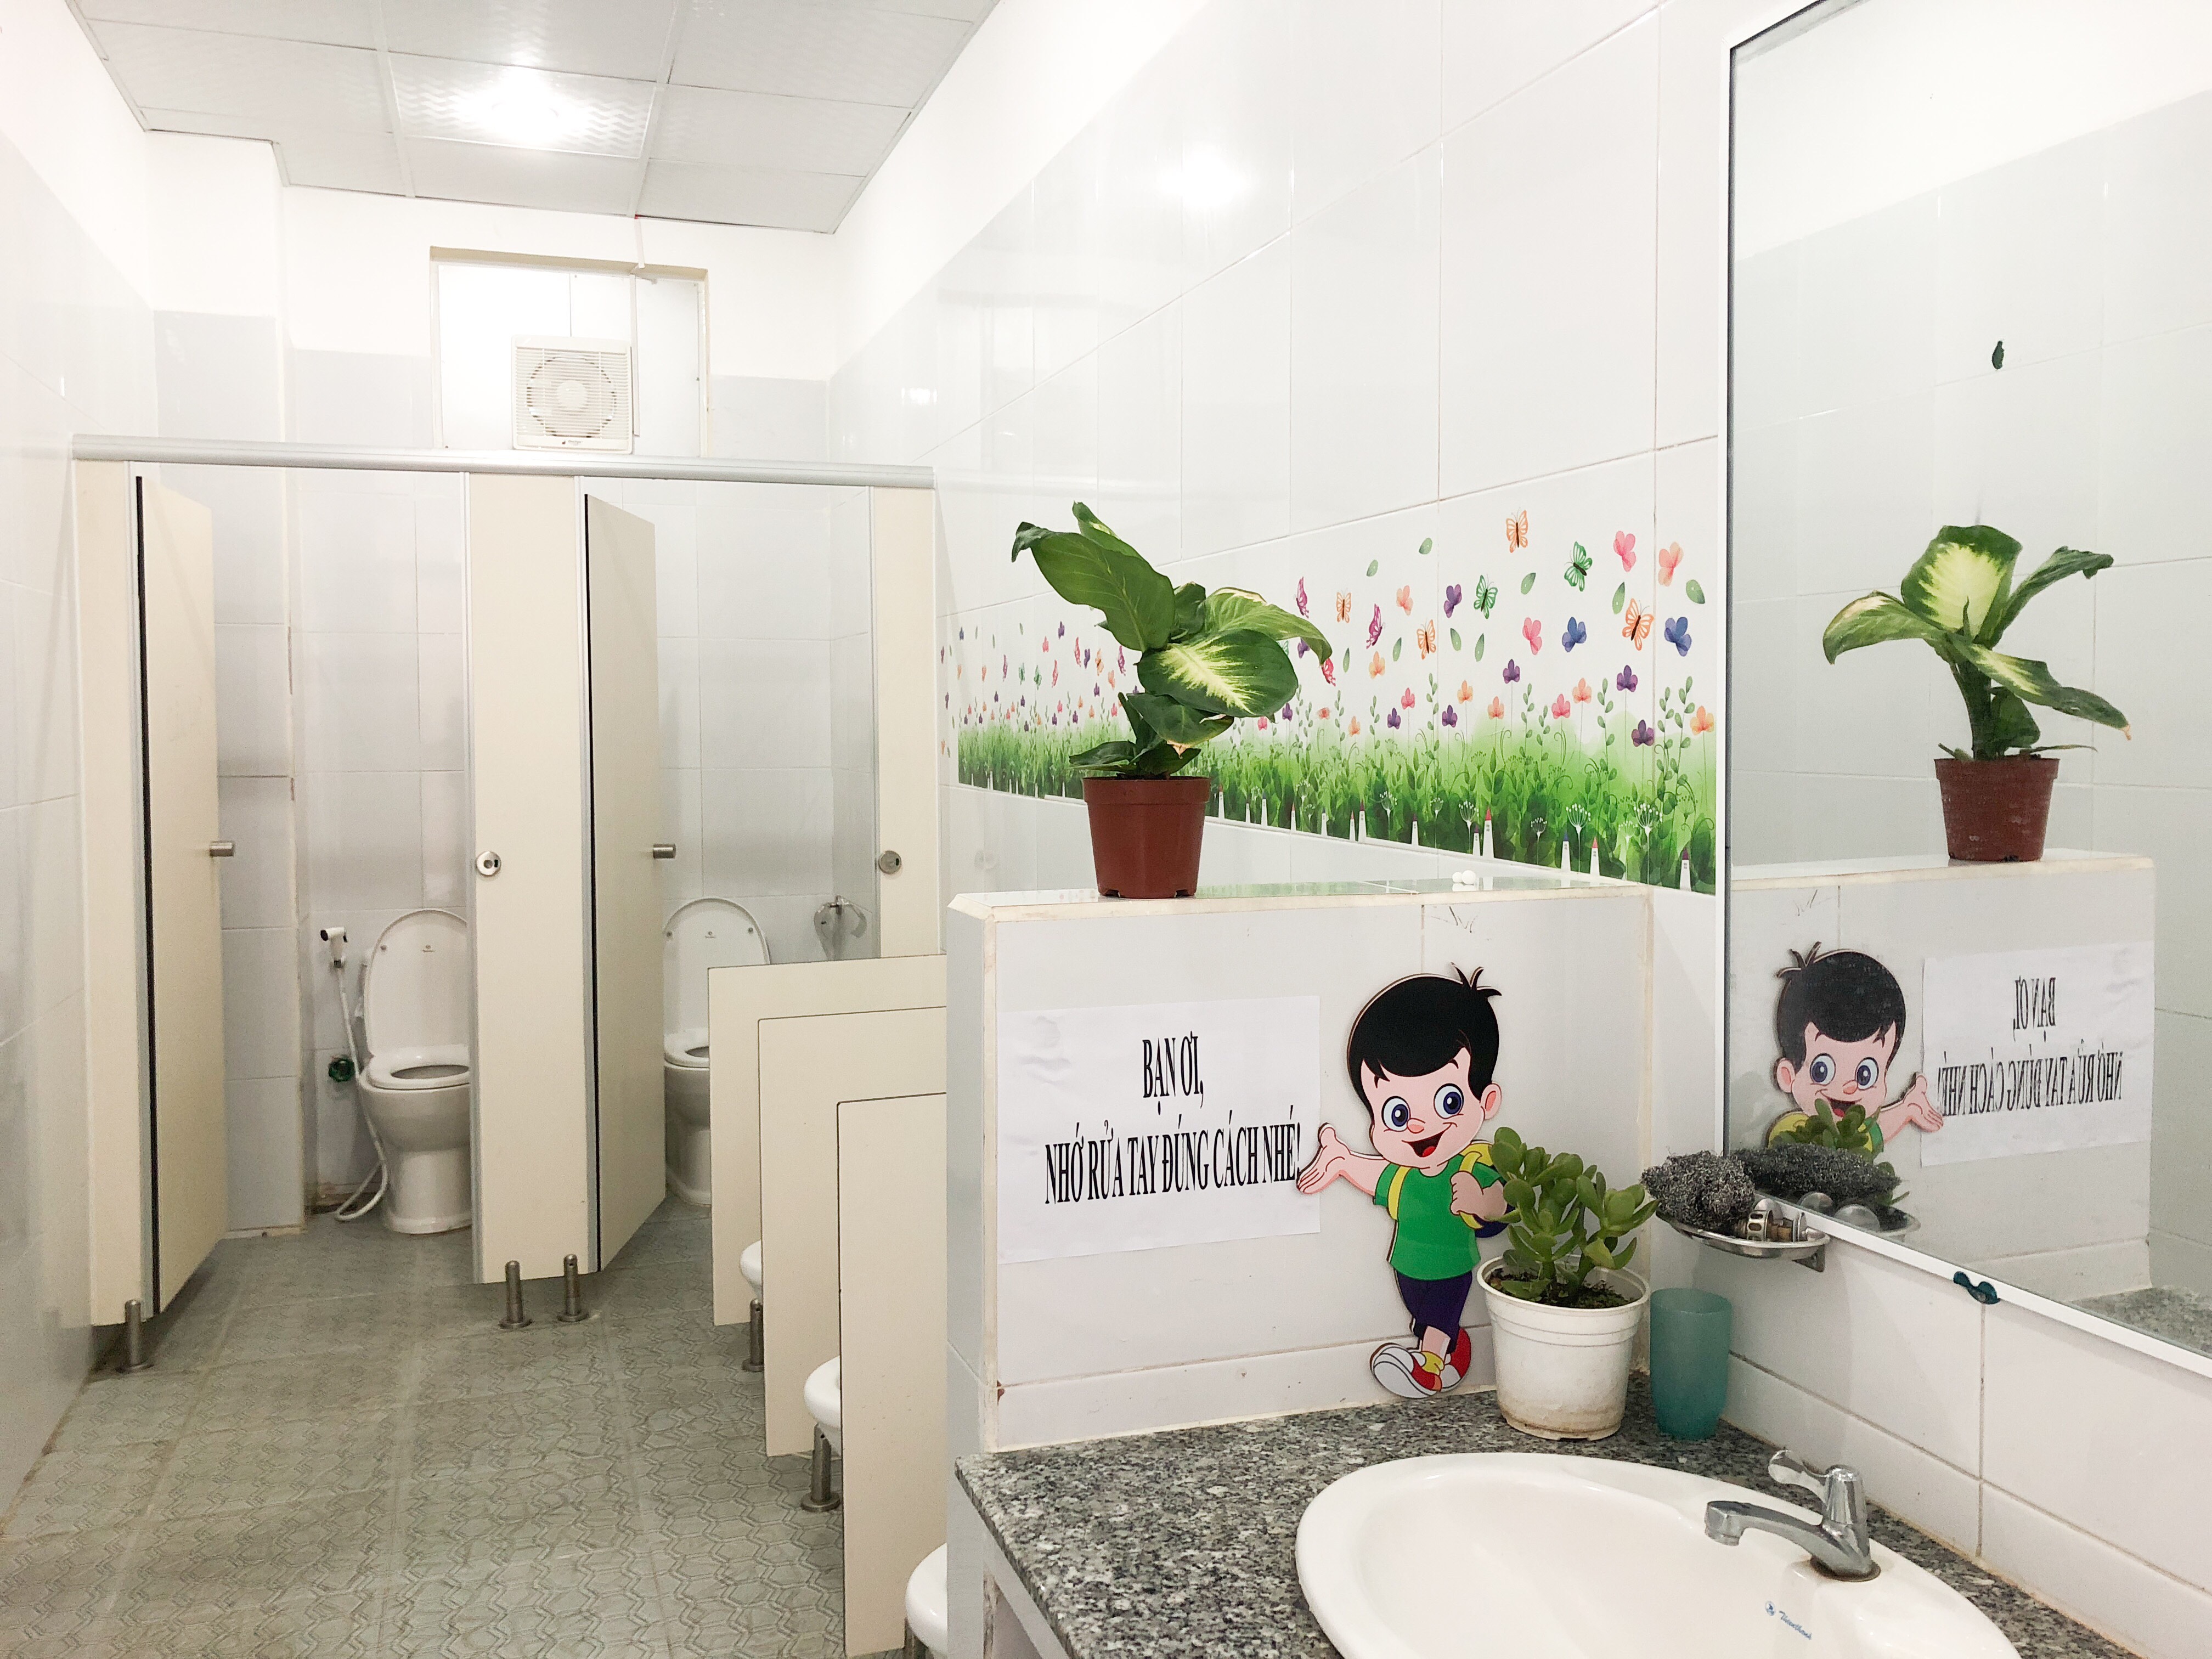 Nhà vệ sinh thân thiện” tại trường Mầm non Hoa Hồng